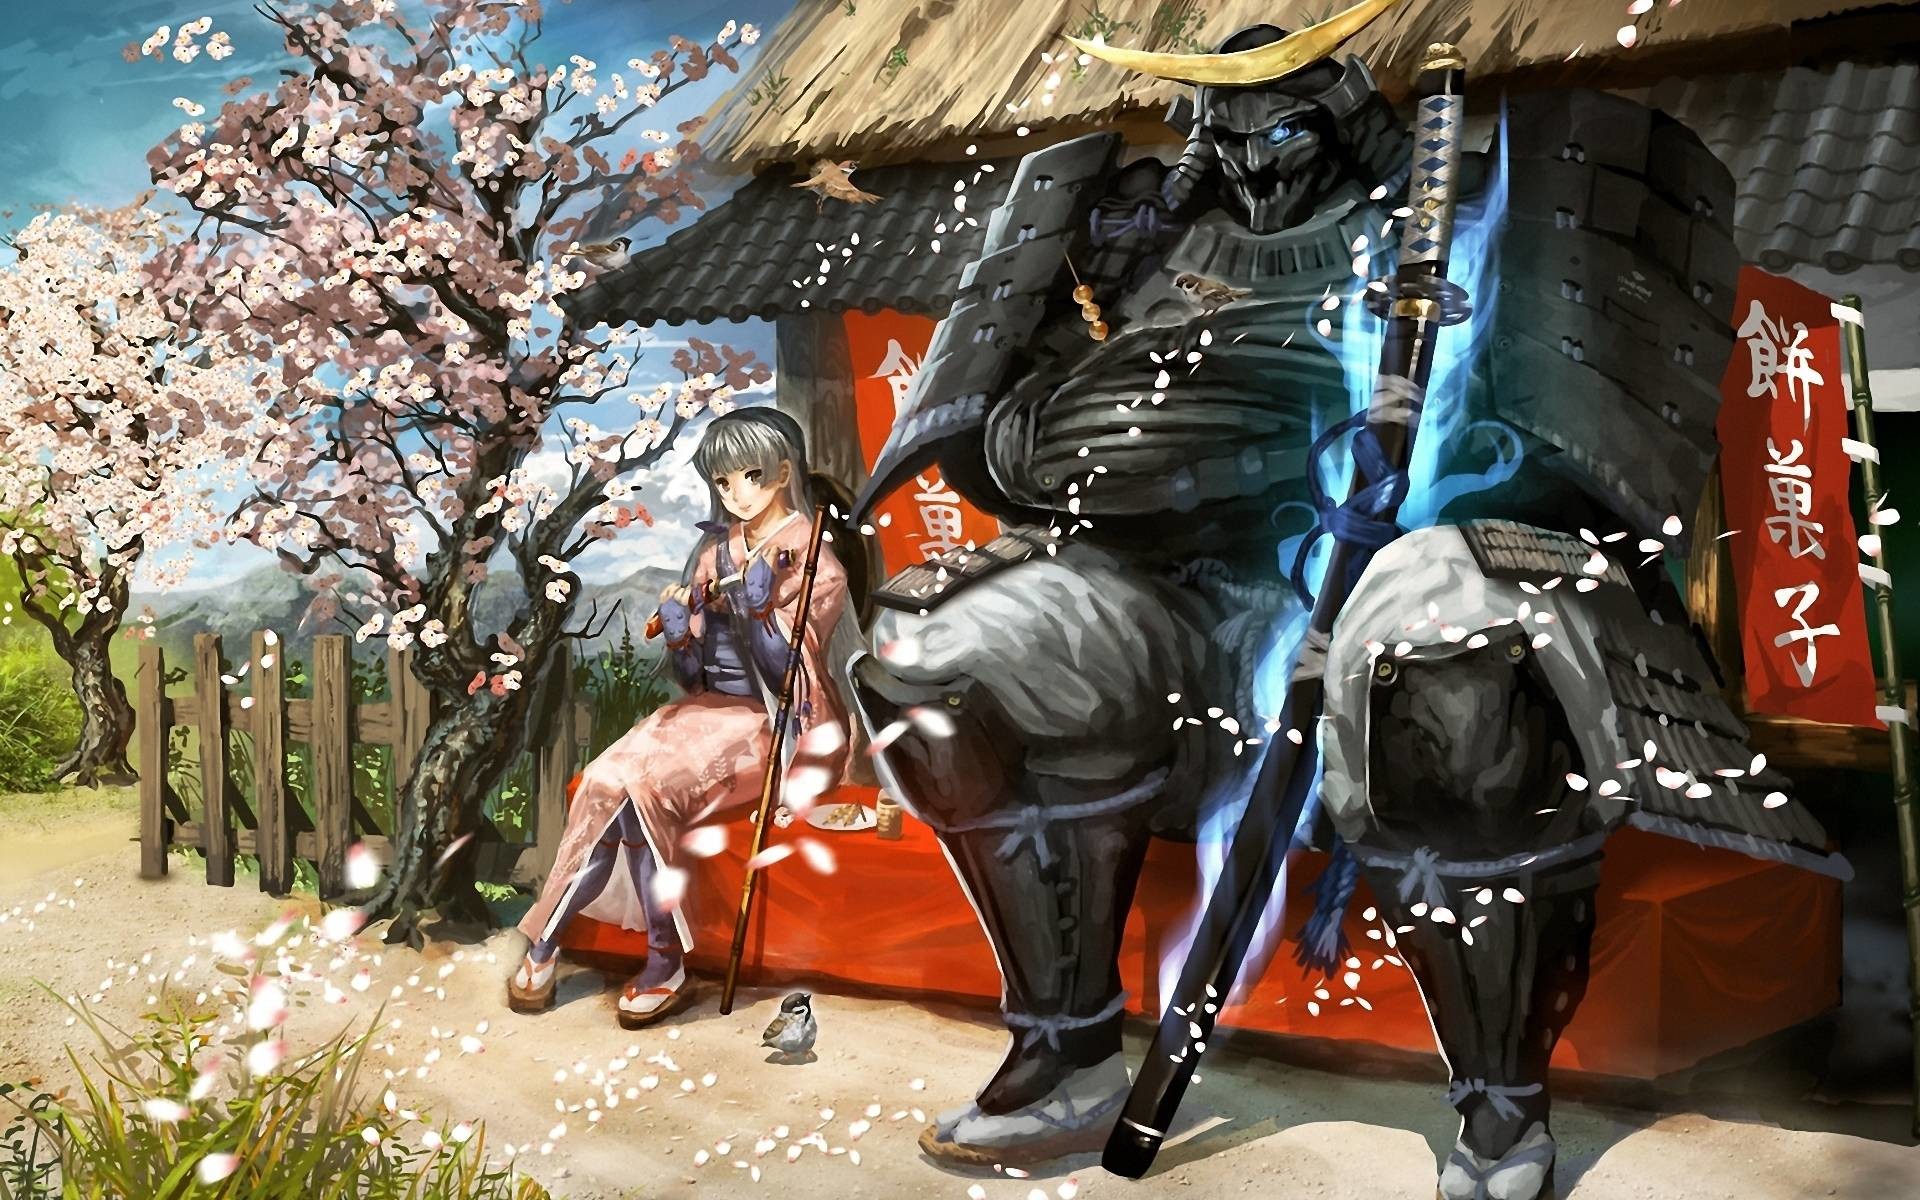  Epic Samurai  HD Wallpaper 1080p   WallpaperTag